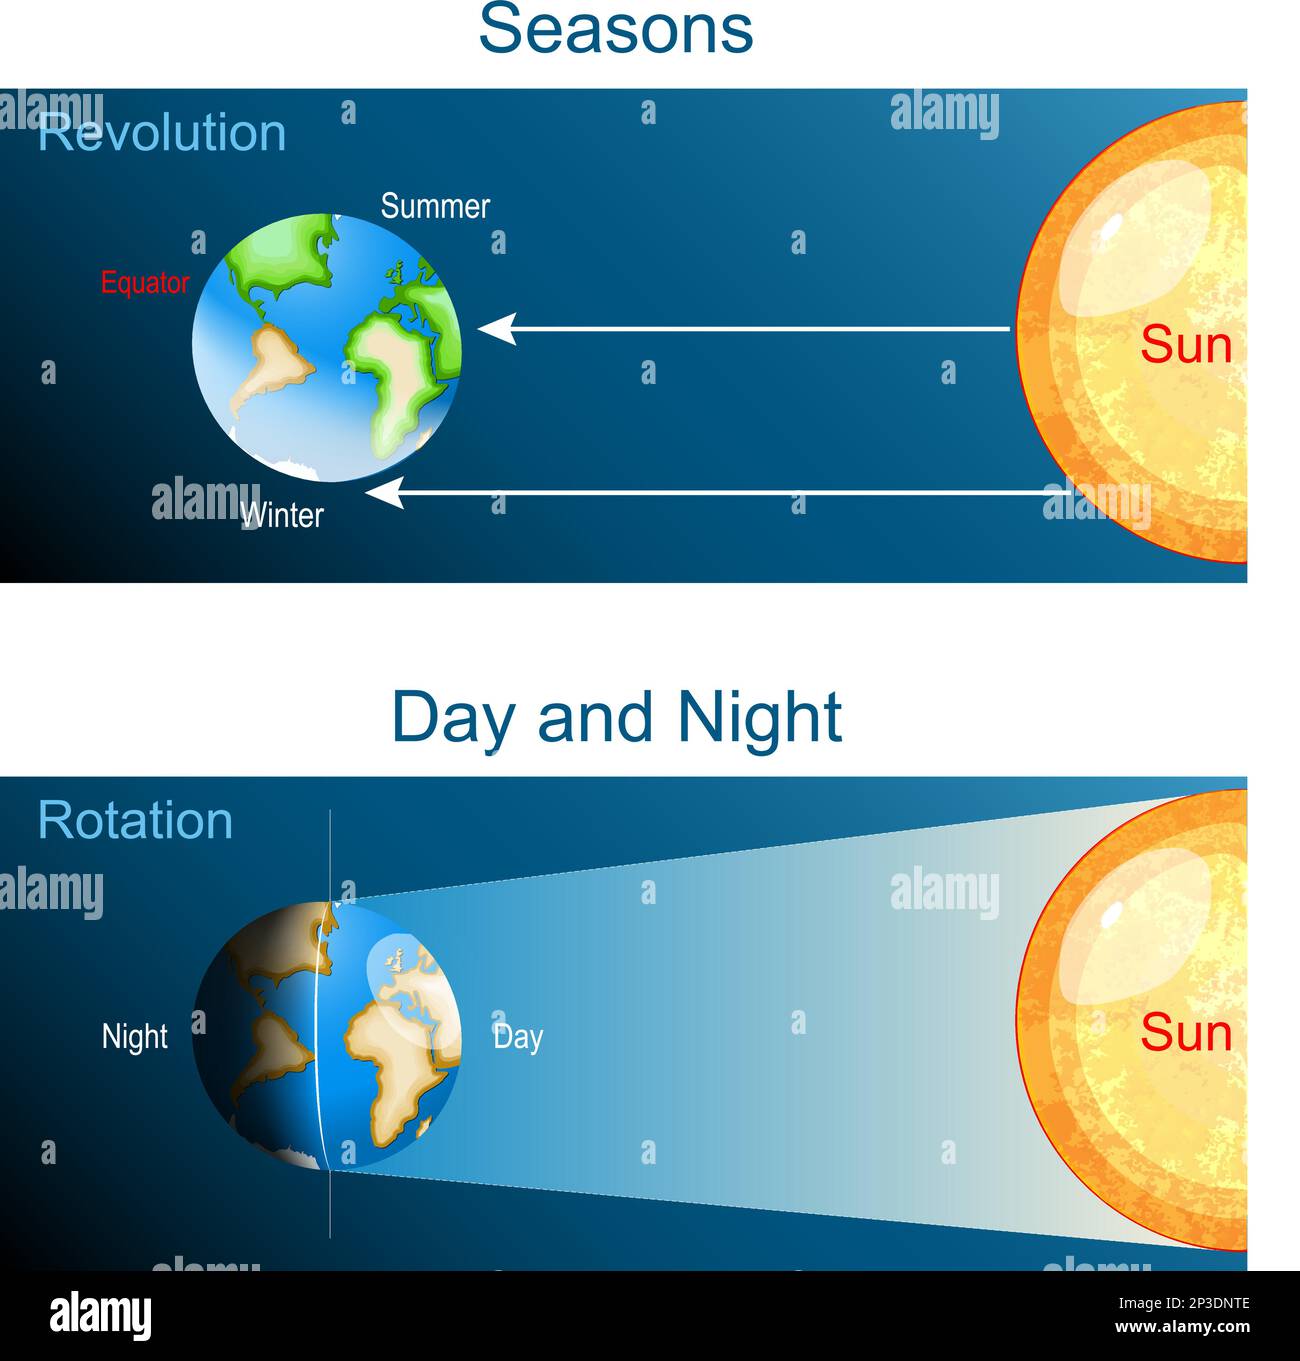 Rotation de la Terre et révolution. Affiche vectorielle sur le jour, la nuit et les saisons sur la planète Terre. Illustration de Vecteur